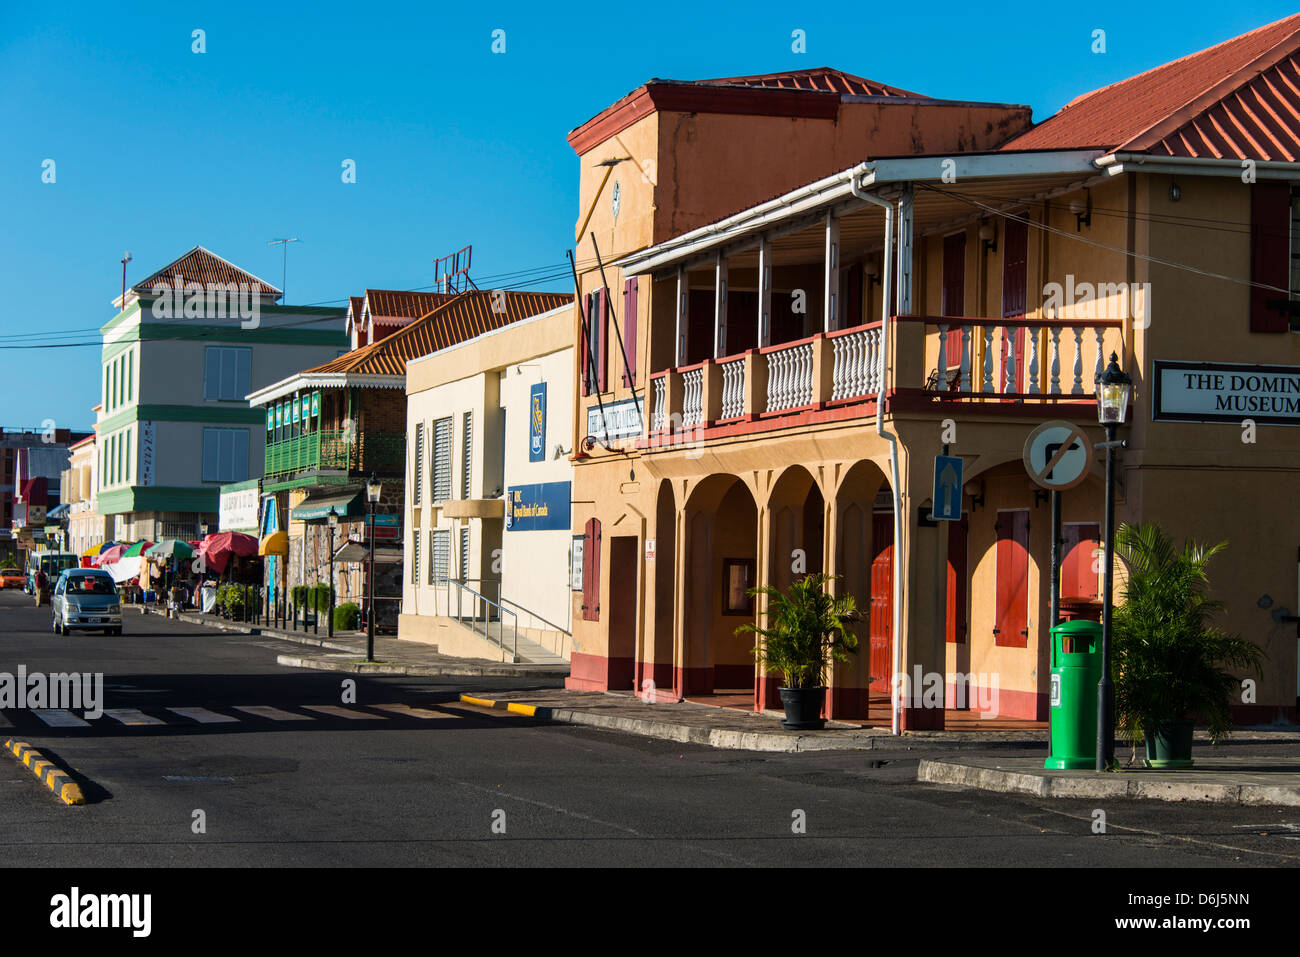 Le centre-ville de la capitale de la DOMINIQUE, Roseau Antilles, Caraïbes, Amérique Centrale Banque D'Images